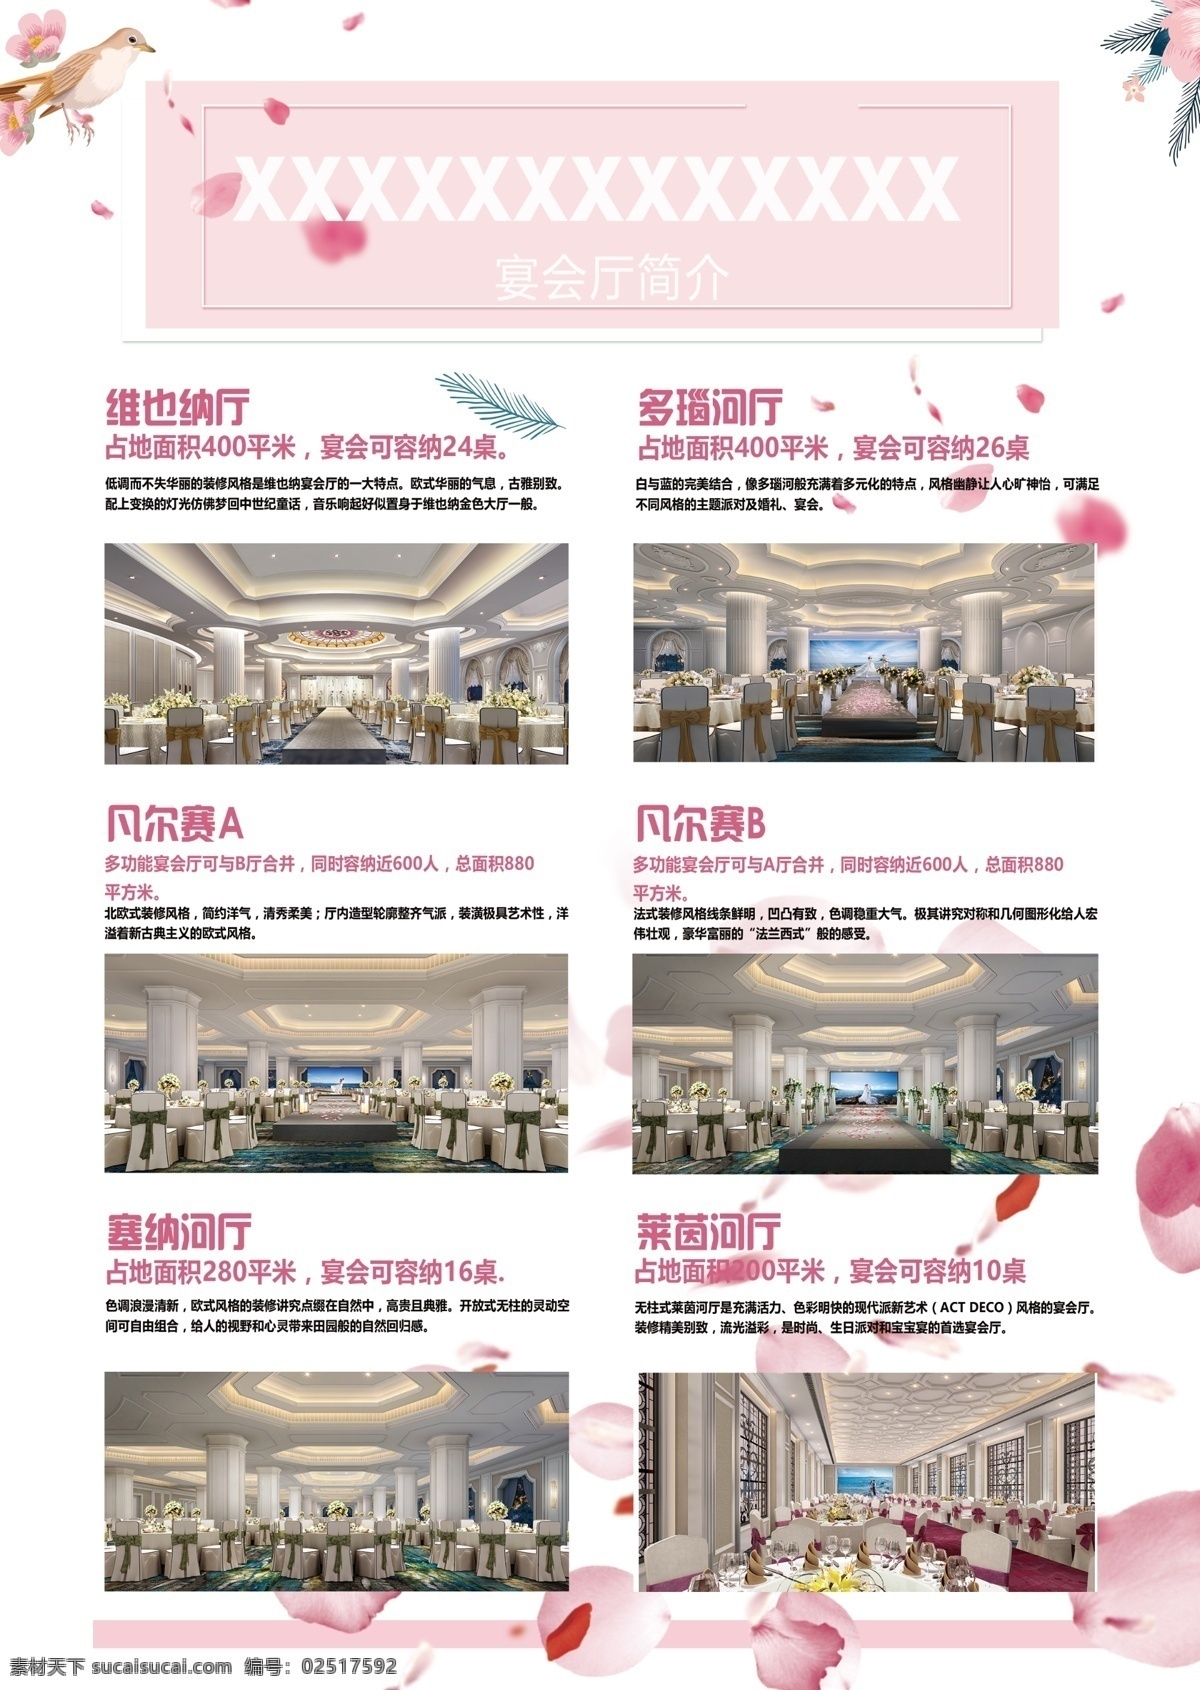 酒店 开业 双 页 海报 宣传单 粉色 花瓣 陈列 双页海报